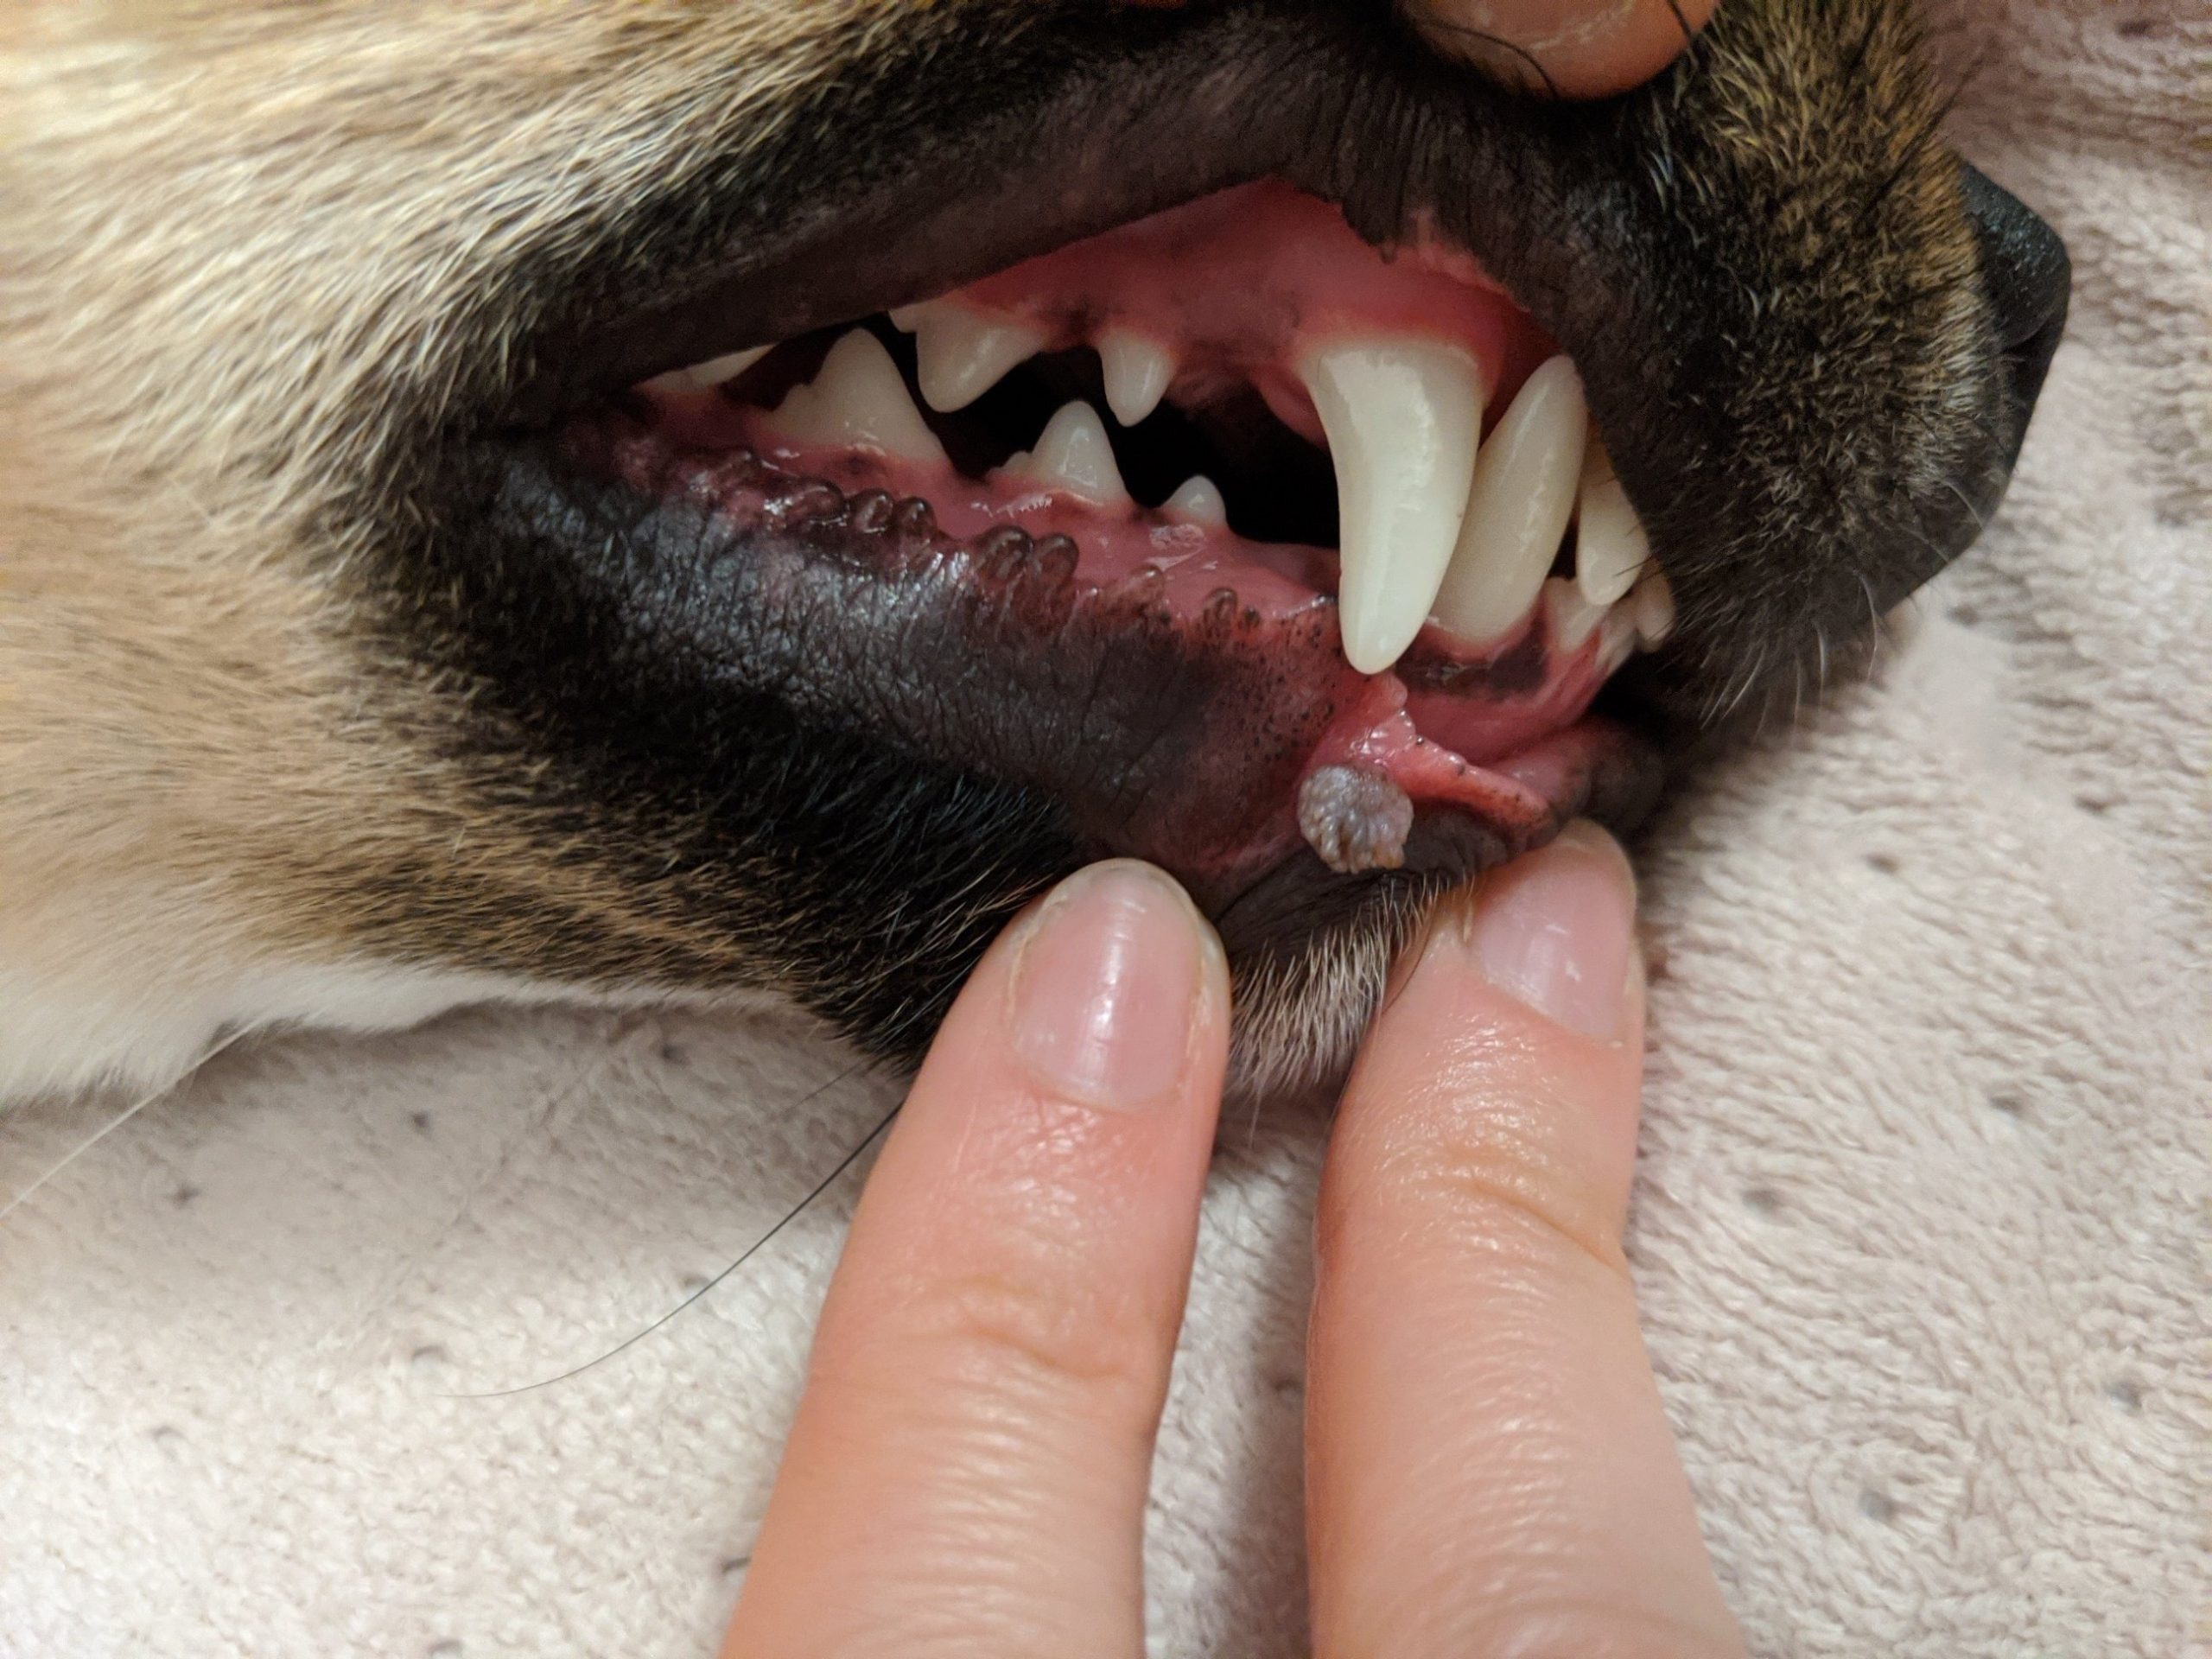 زخم های دهانی سگ ها؛ علل و درمان زخم های دهانی در سگ ها بر روی لب ها، لثه ها، زبان و سطح داخلی گونه ها دیده می شوند و وضعیتی دردناک و آزاردهنده برای آنها ایجاد می کنند. در این وضعیت، حتی غذا خوردن برای سگ ها دشوار می شود و می تواند راحتی و کیفیت زندگی آنها را پایین بیاورد. بنابراین لازم است علت ایجاد التهاب و زخم های دهان شناخته و به آن رسیدگی شود. 